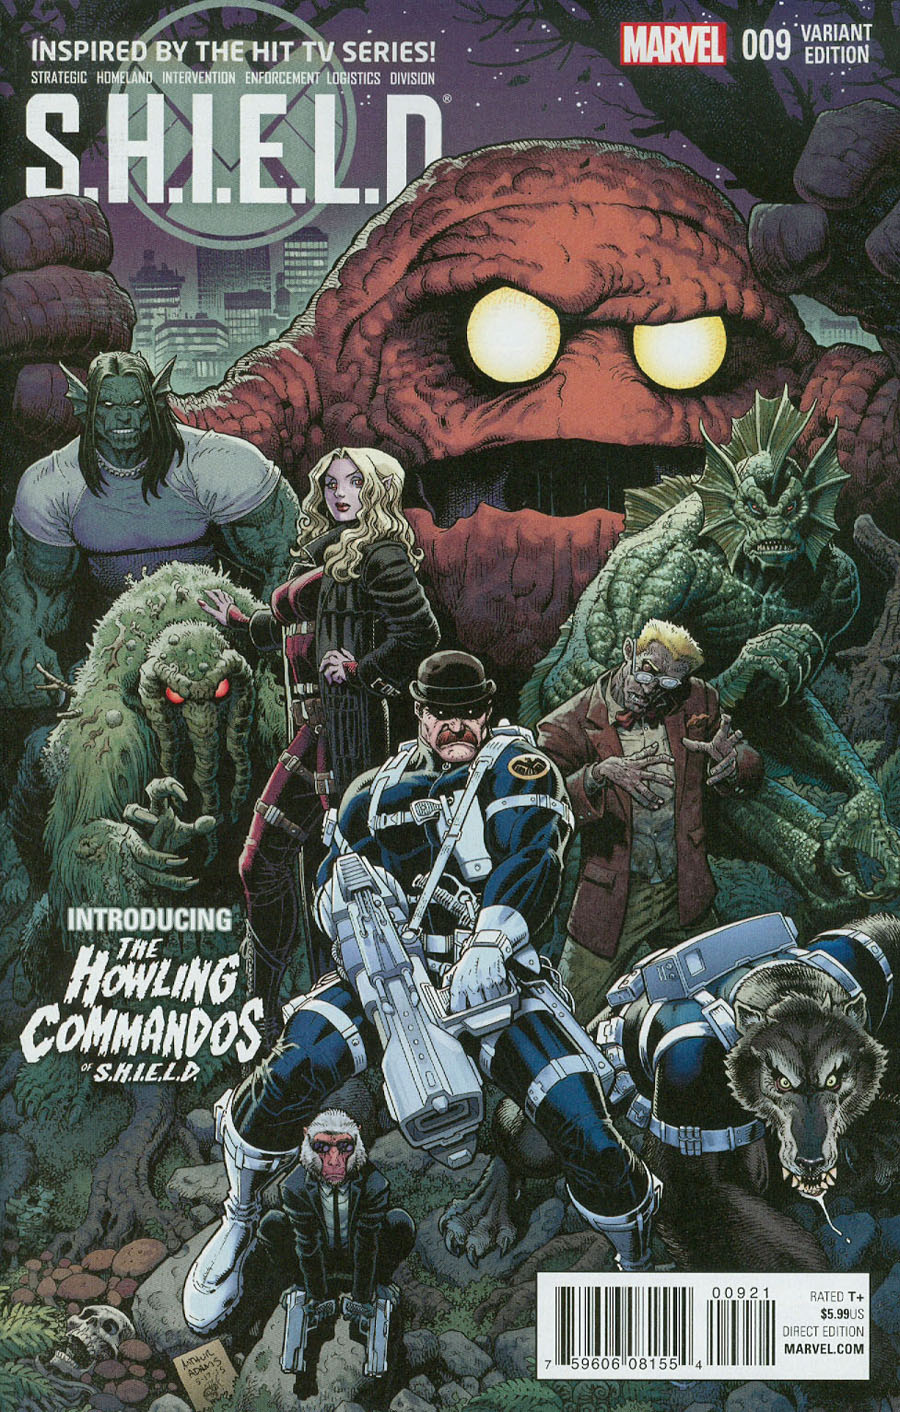 S.H.I.E.L.D. Vol 4 #9 Cover B Incentive Arthur Adams Howling Commandos Variant Cover